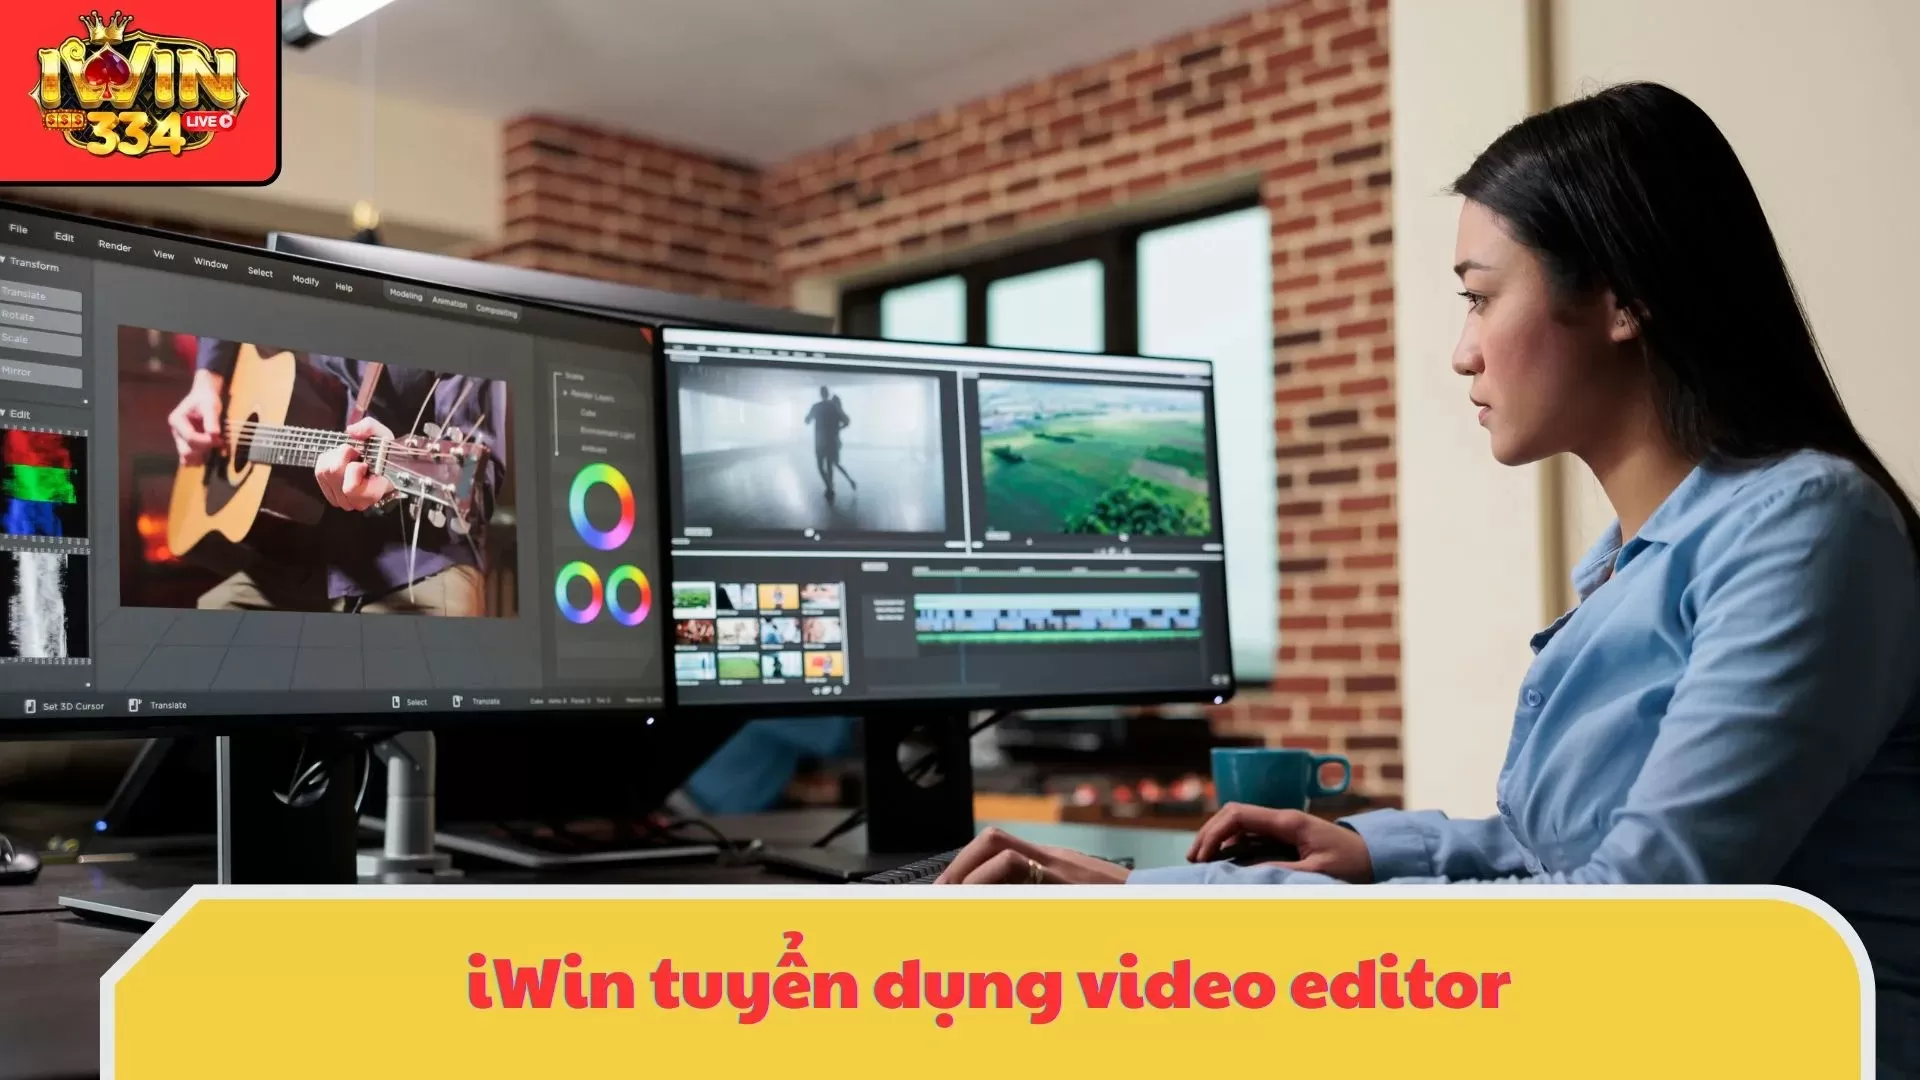 iWin tuyển dụng thiết kế video lương cao cho phép làm việc từ xa (remote) linh hoạt